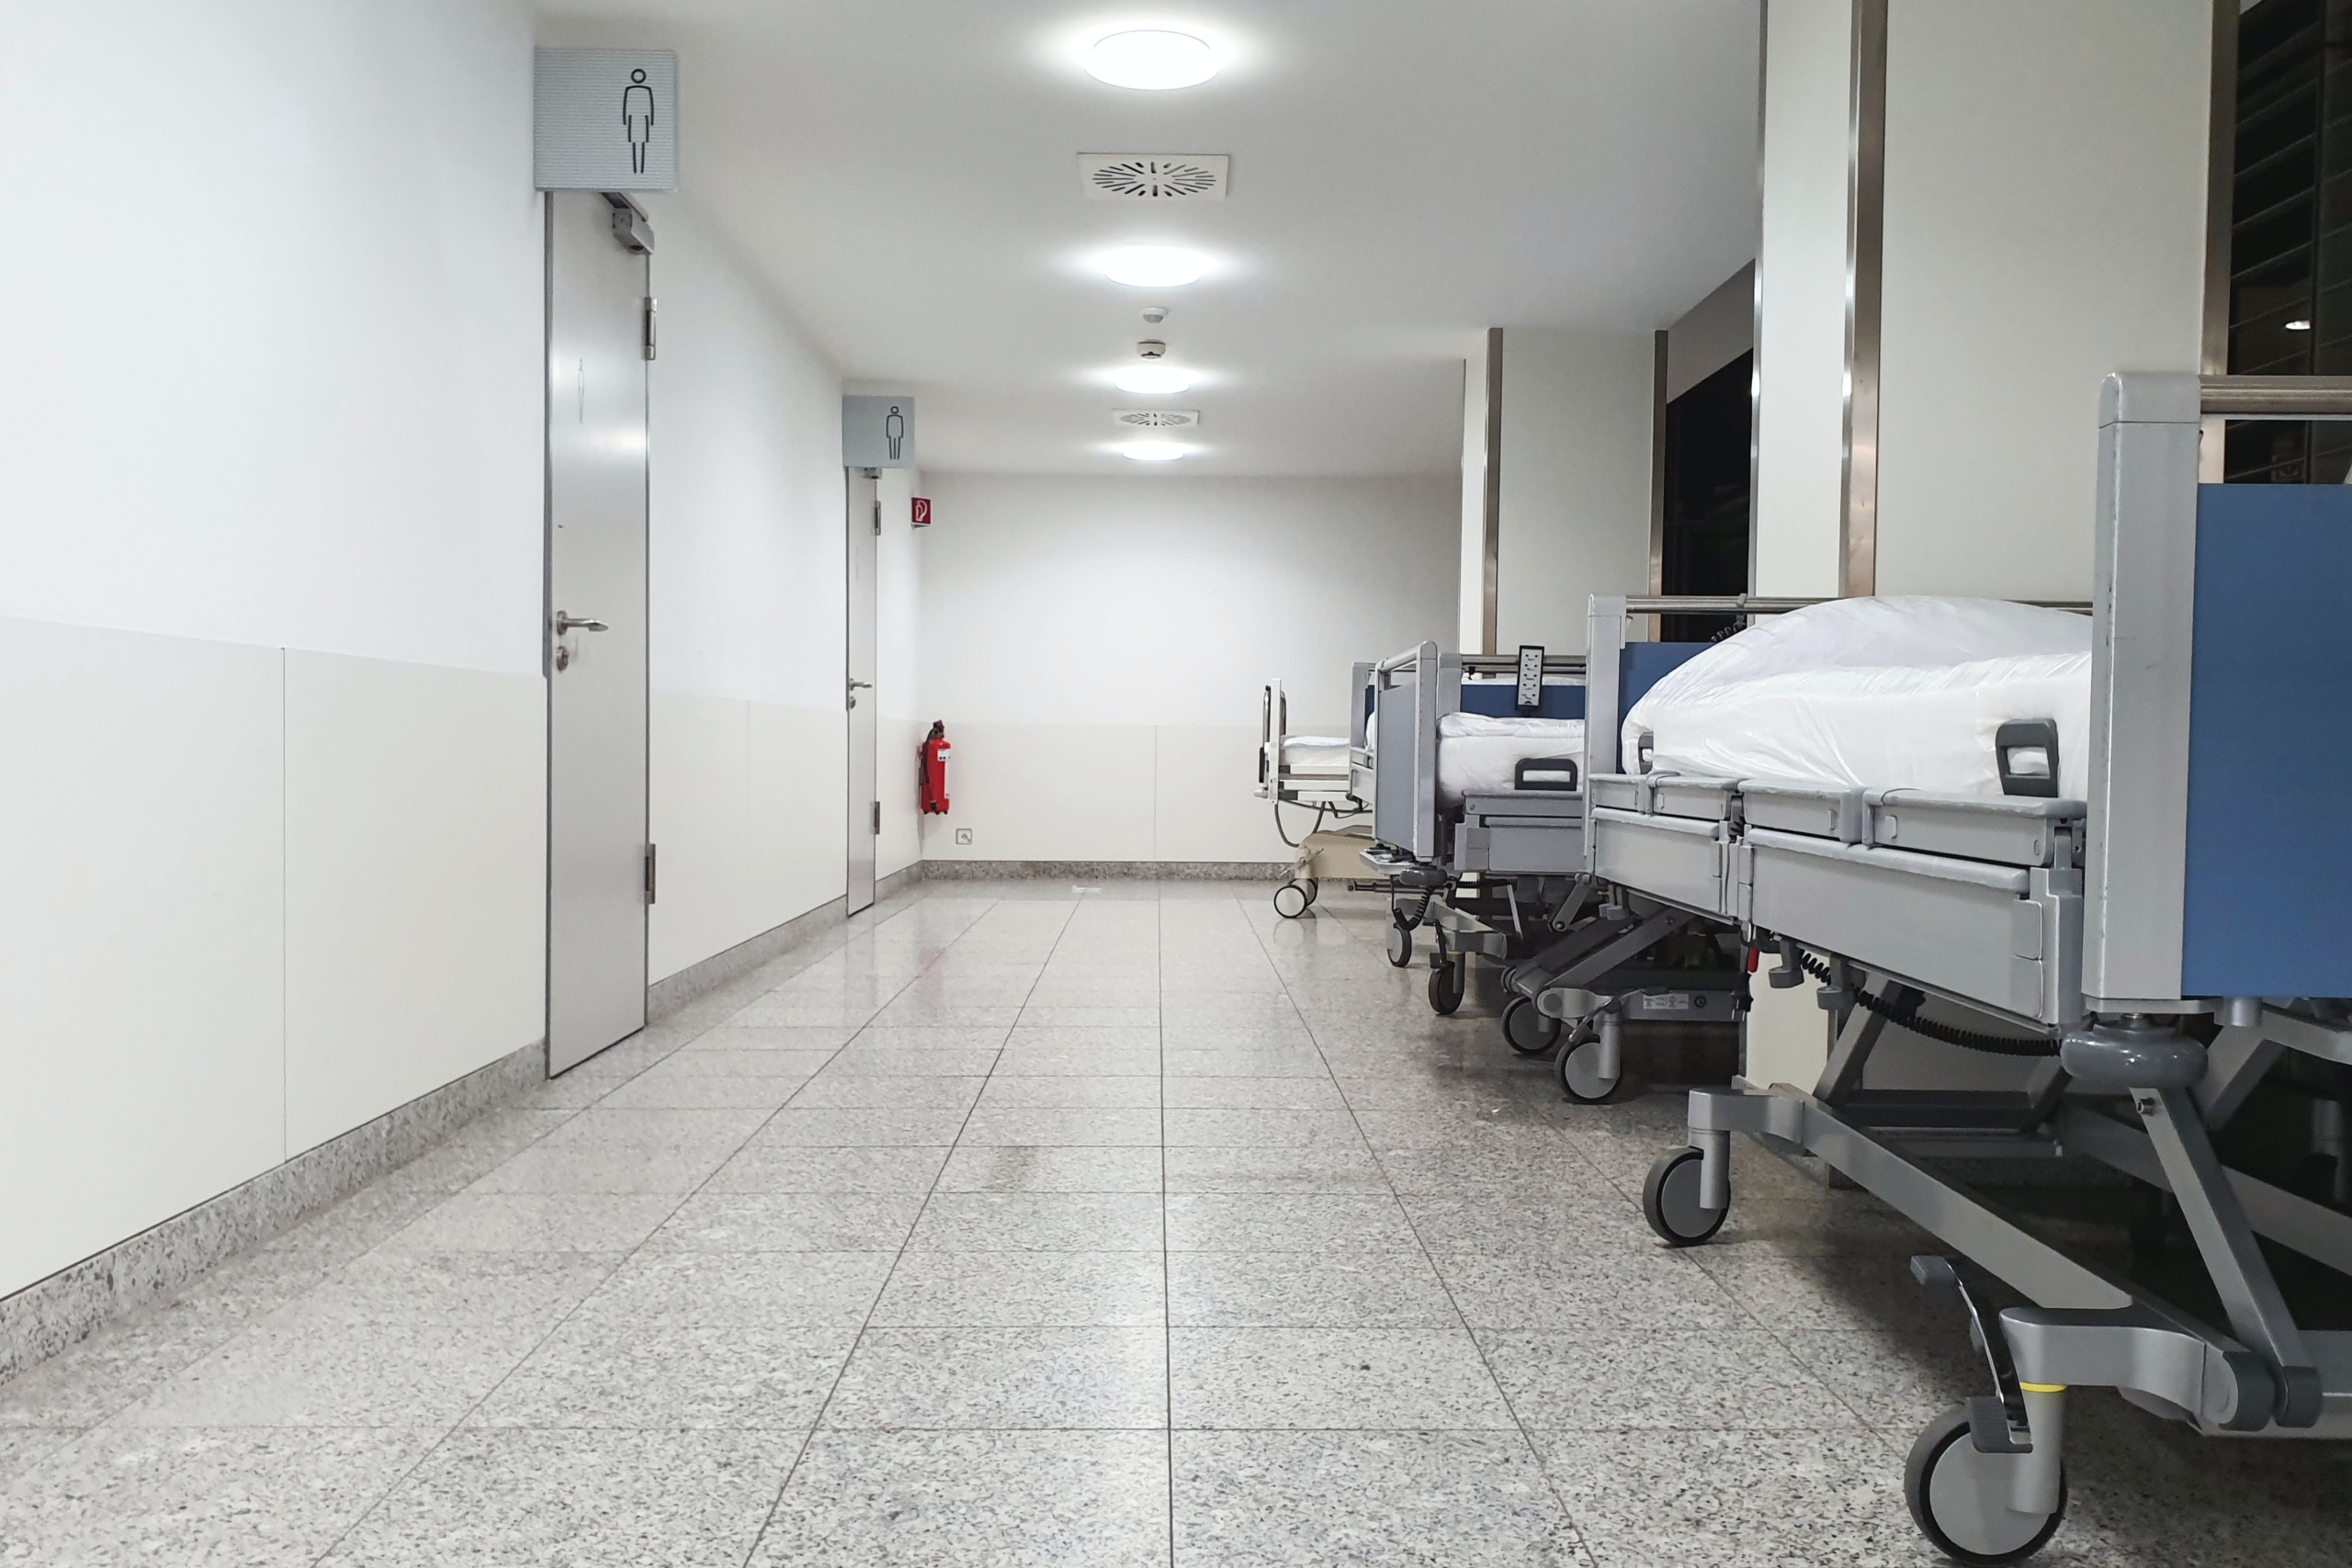 Post precedente: Sicurezza negli ospedali: una struttura su tre non rispetta le norme antincendio